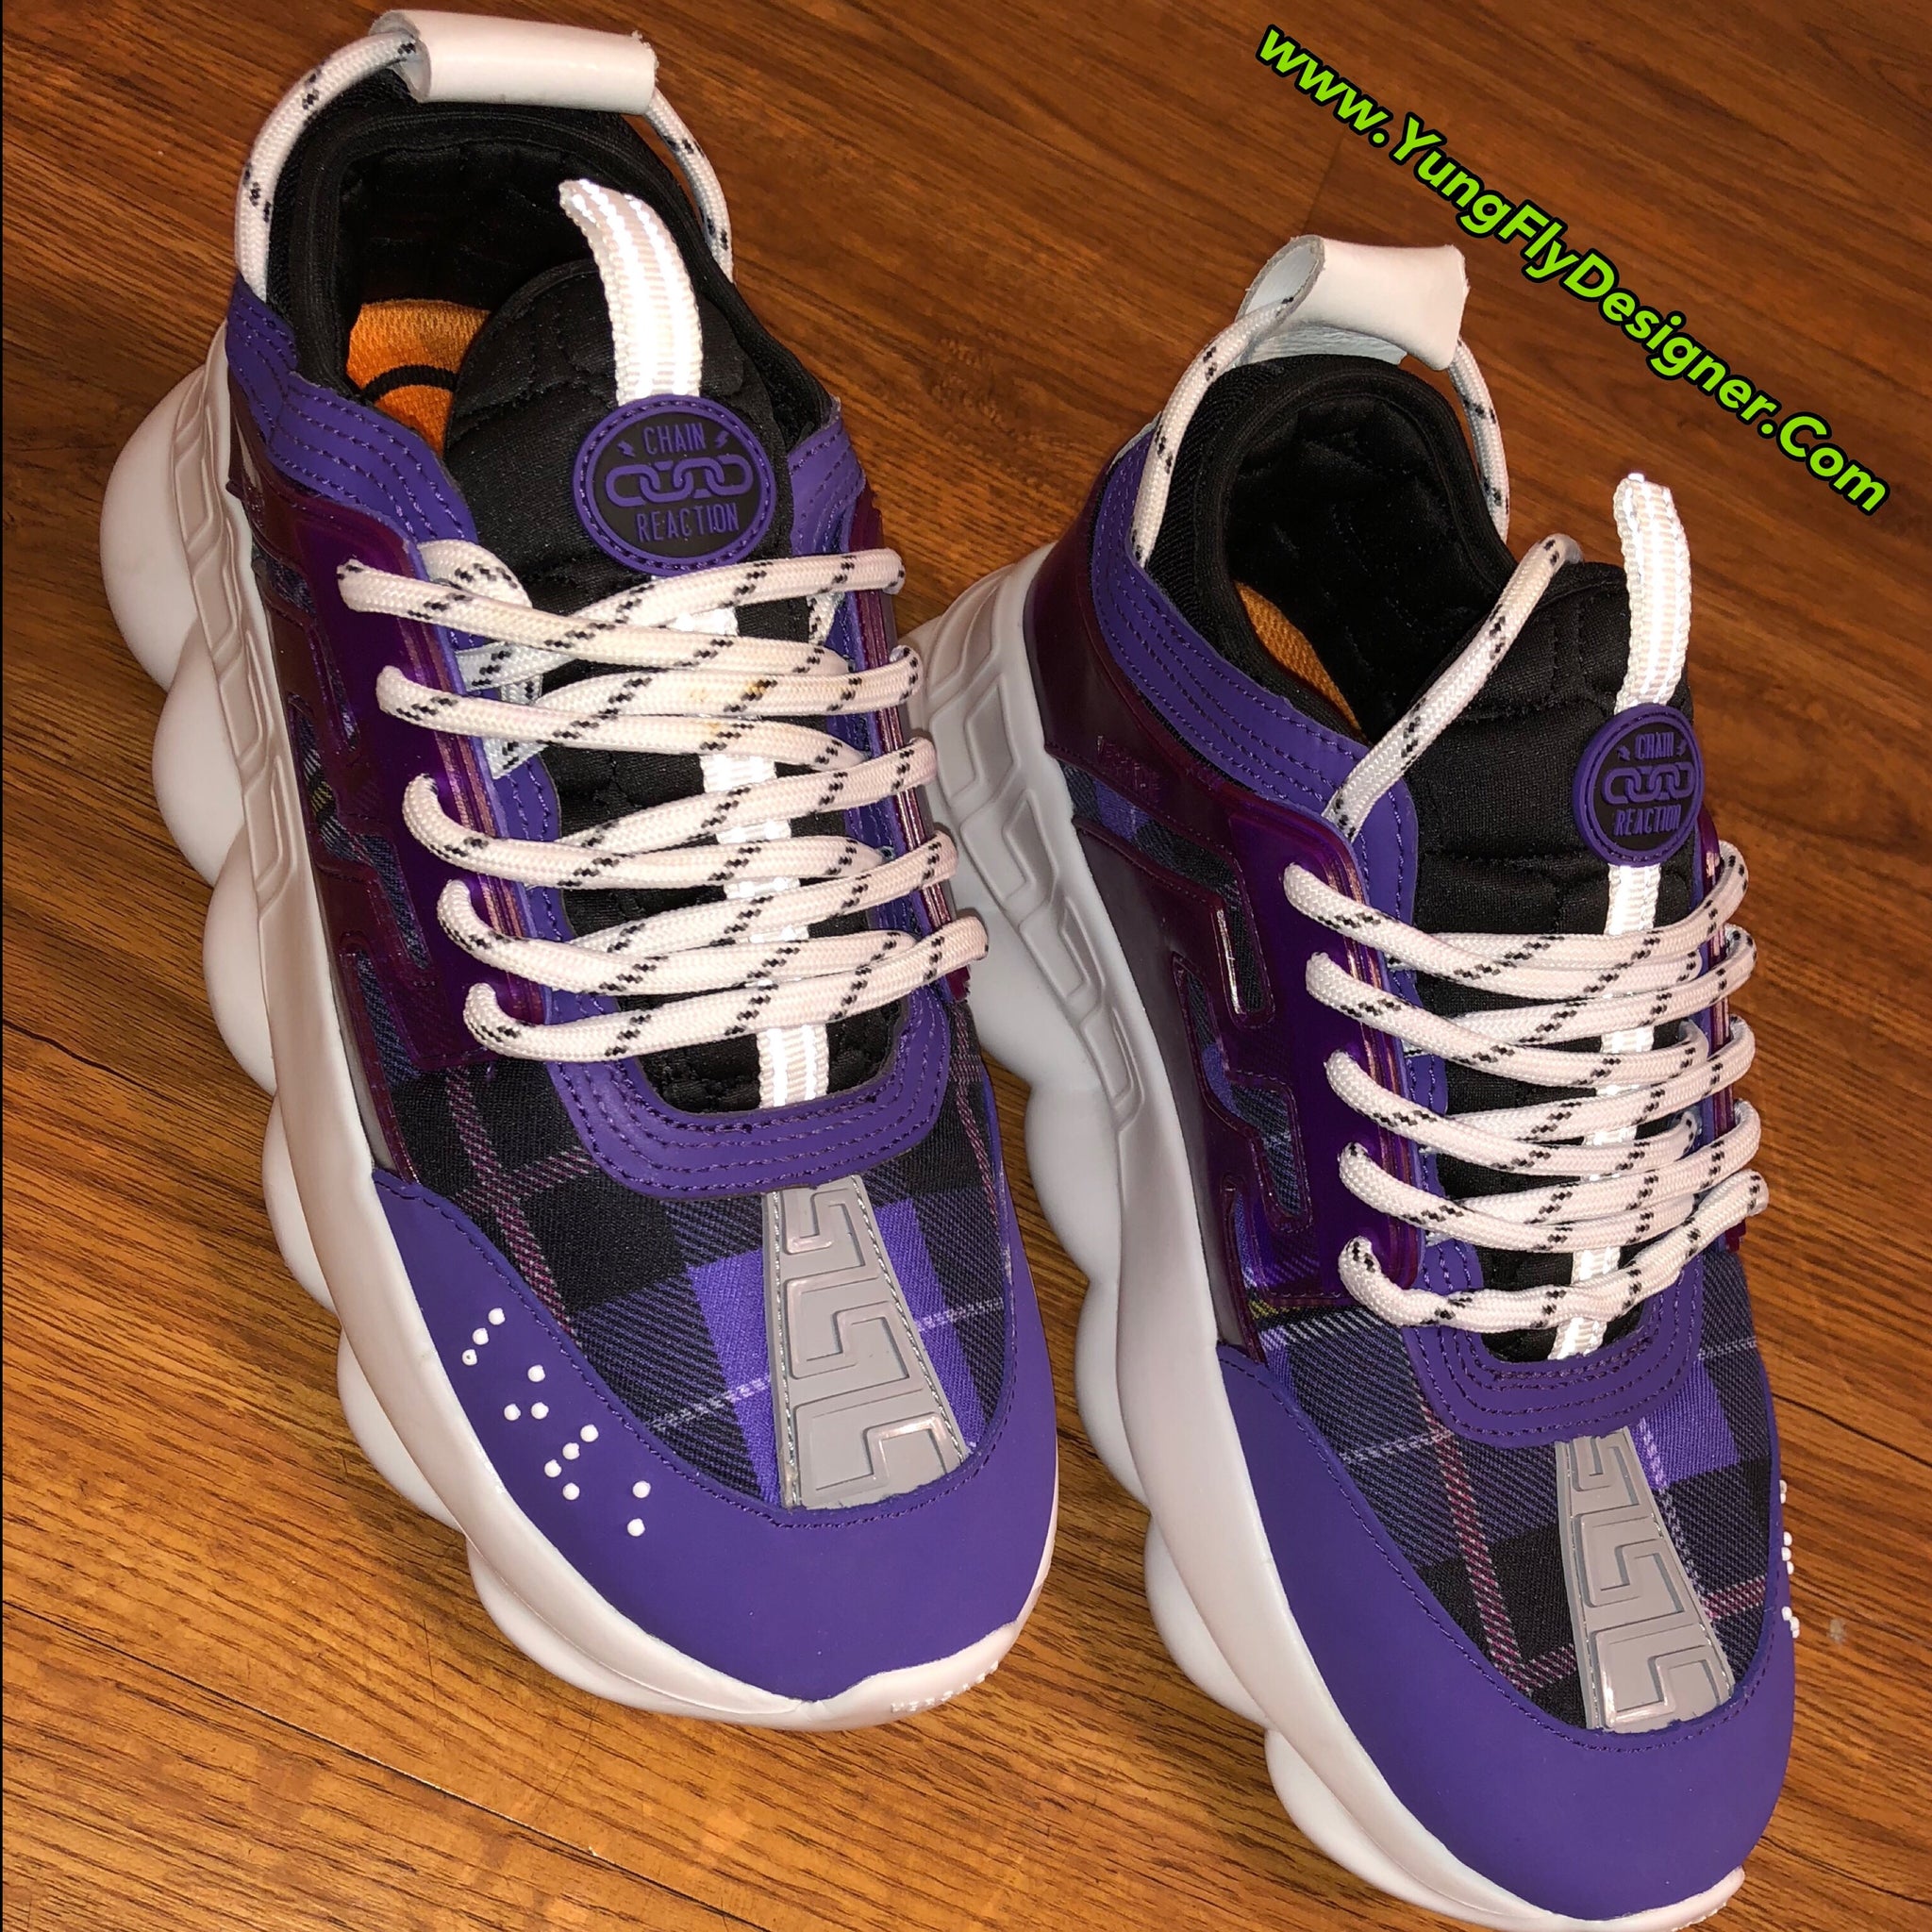 versace purple shoes